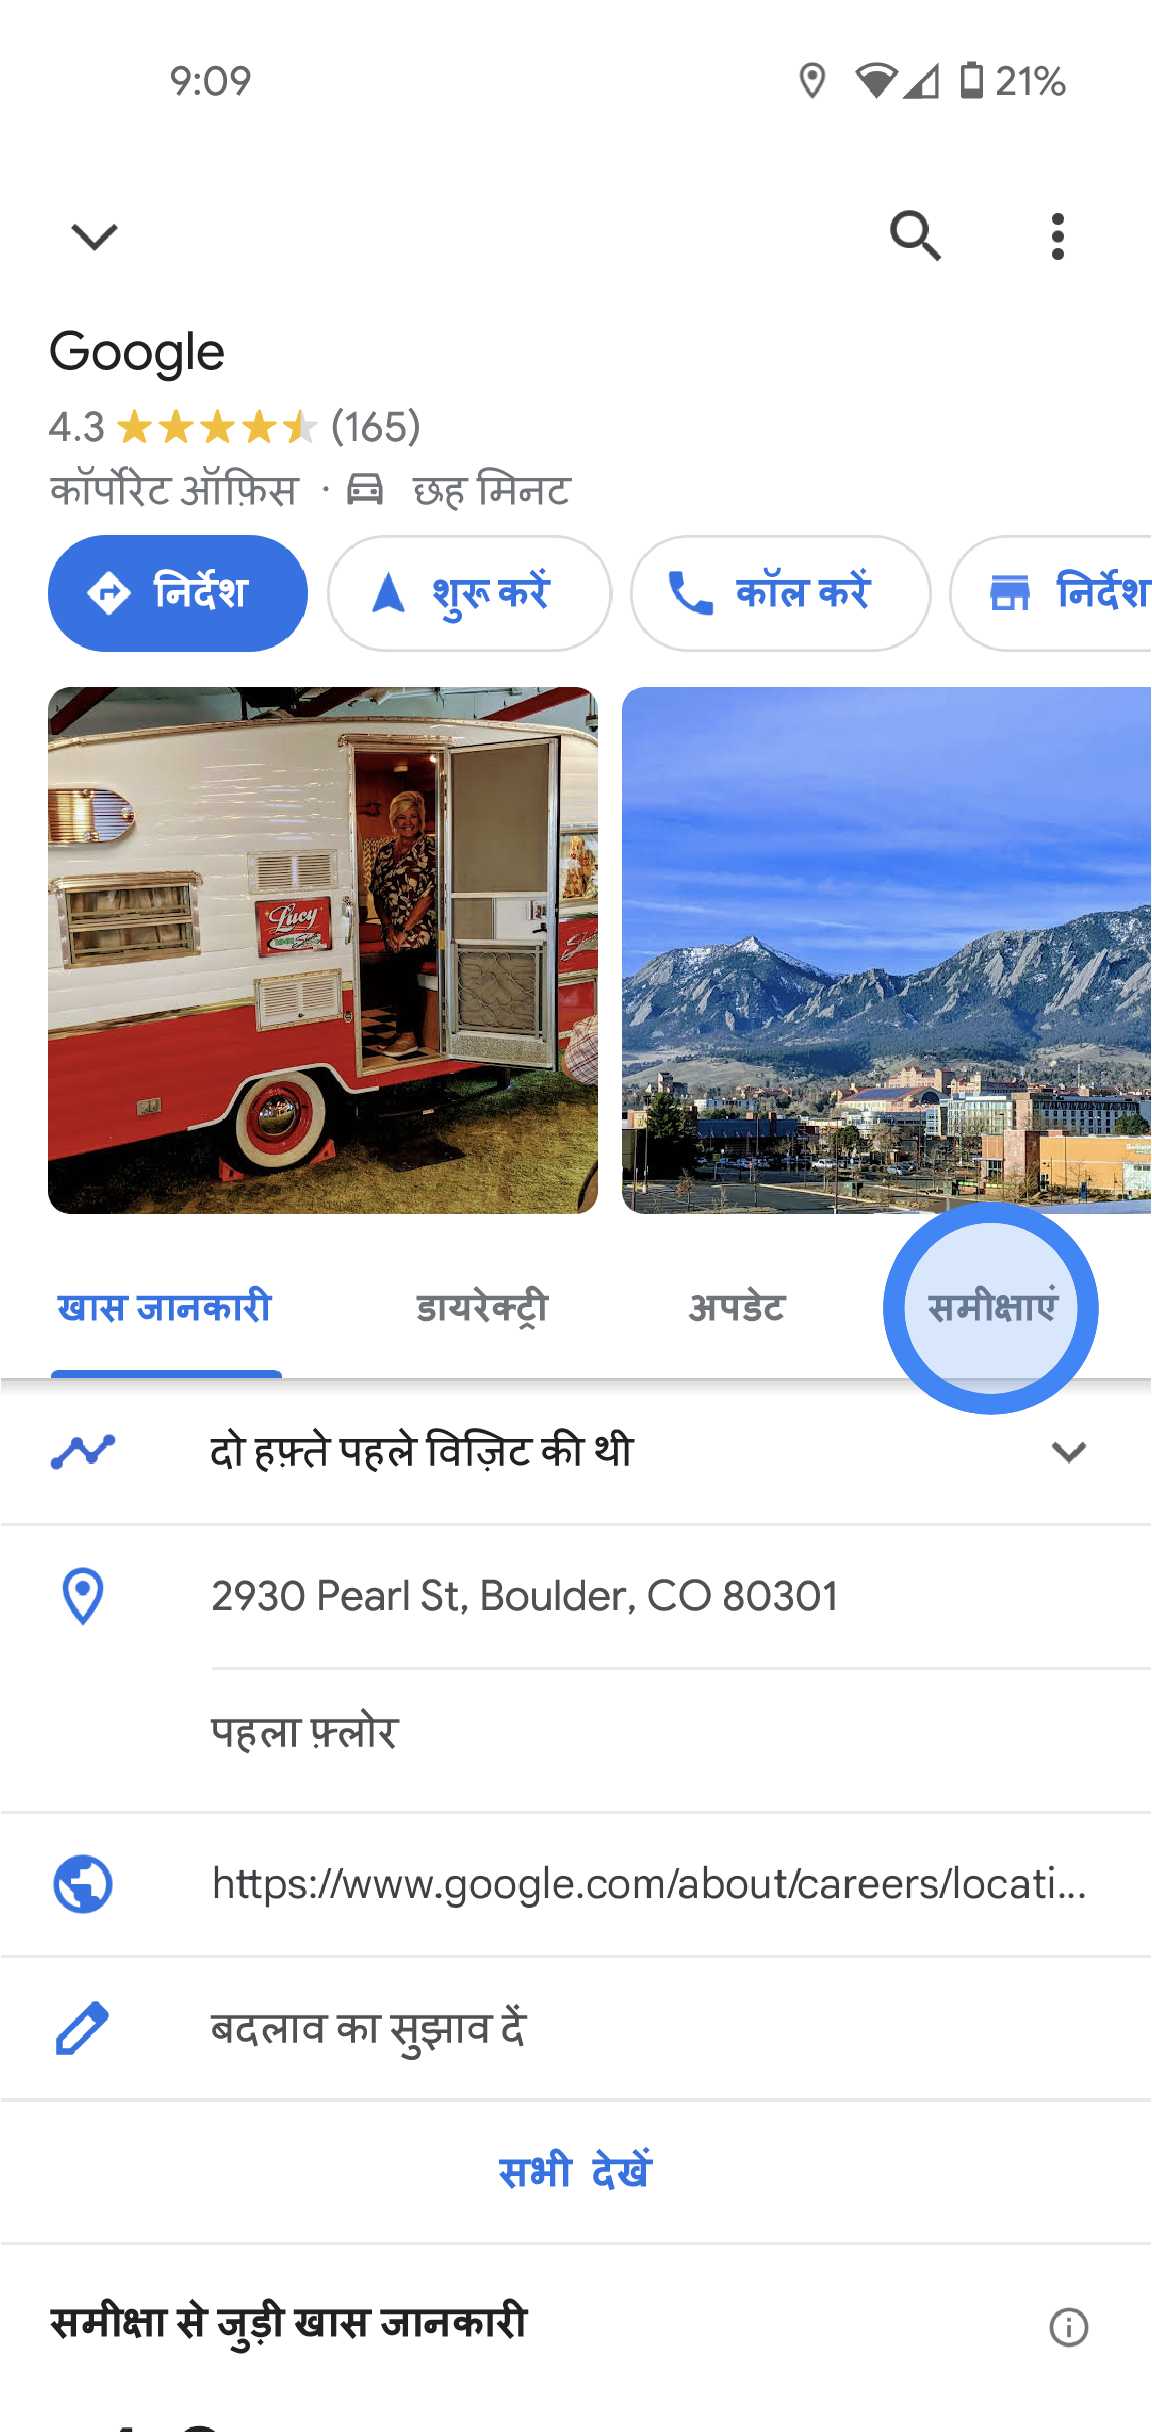 Google Maps ऐप्लिकेशन में, Google के ऑफ़िस की जानकारी दी गई है. इसमें समीक्षा की औसत रेटिंग, फ़ोटो, पता, और फ़ोन नंबर जैसी जानकारी है. स्क्रीन के बीच में, कुछ टैब हैं. टैब पर, खास जानकारी, अपडेट, और समीक्षाएं लिखा है.